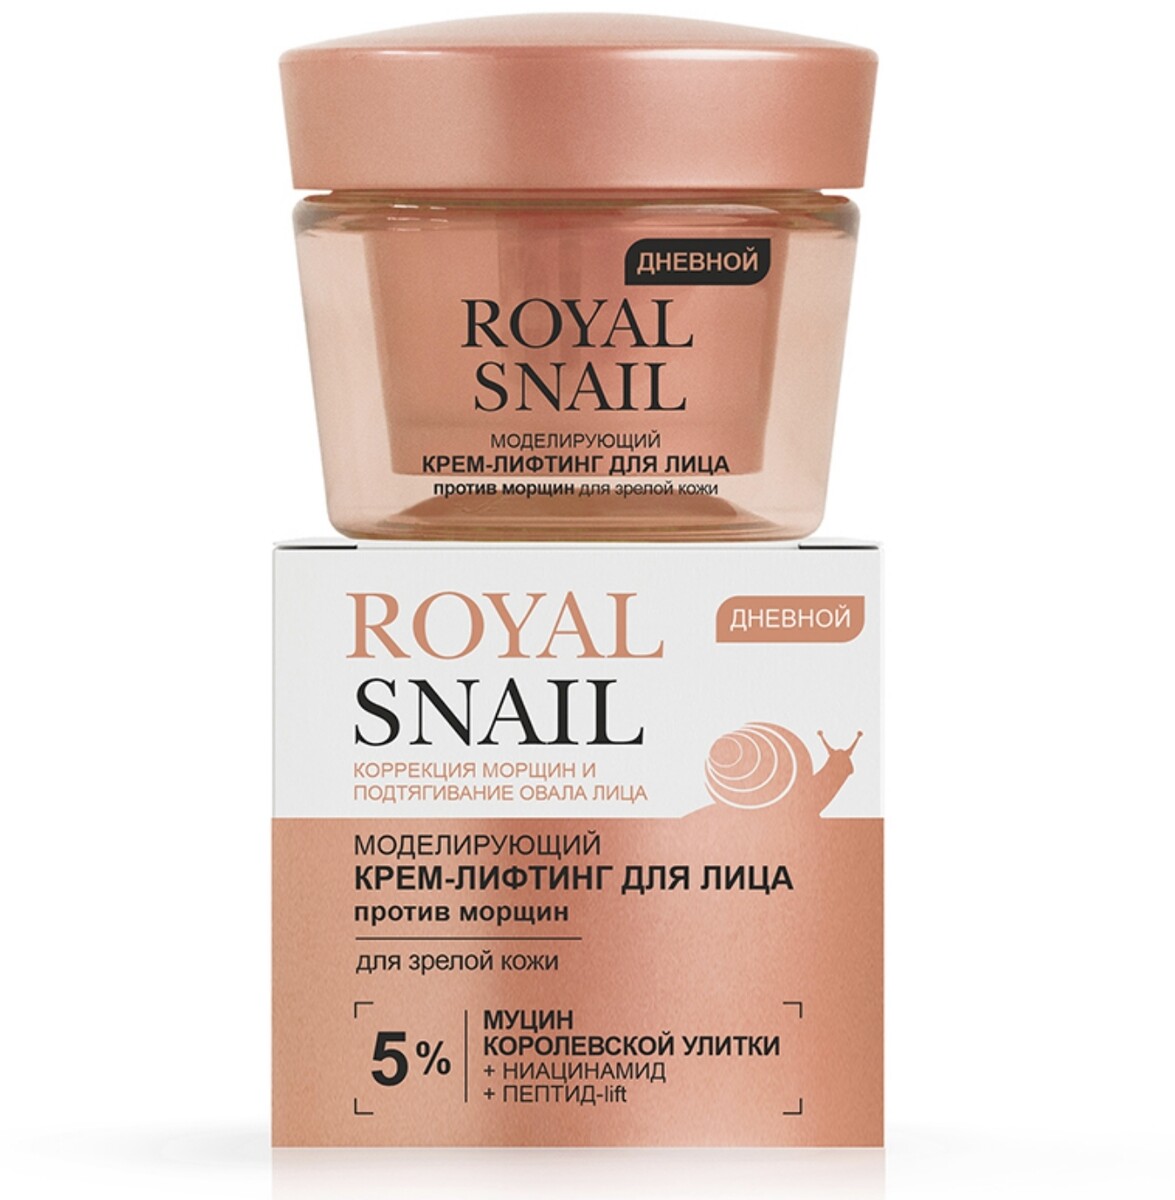 Royal snail моделирующий крем-лифтинг для лица против морщин дневной для зрелой кожи, 45 мл